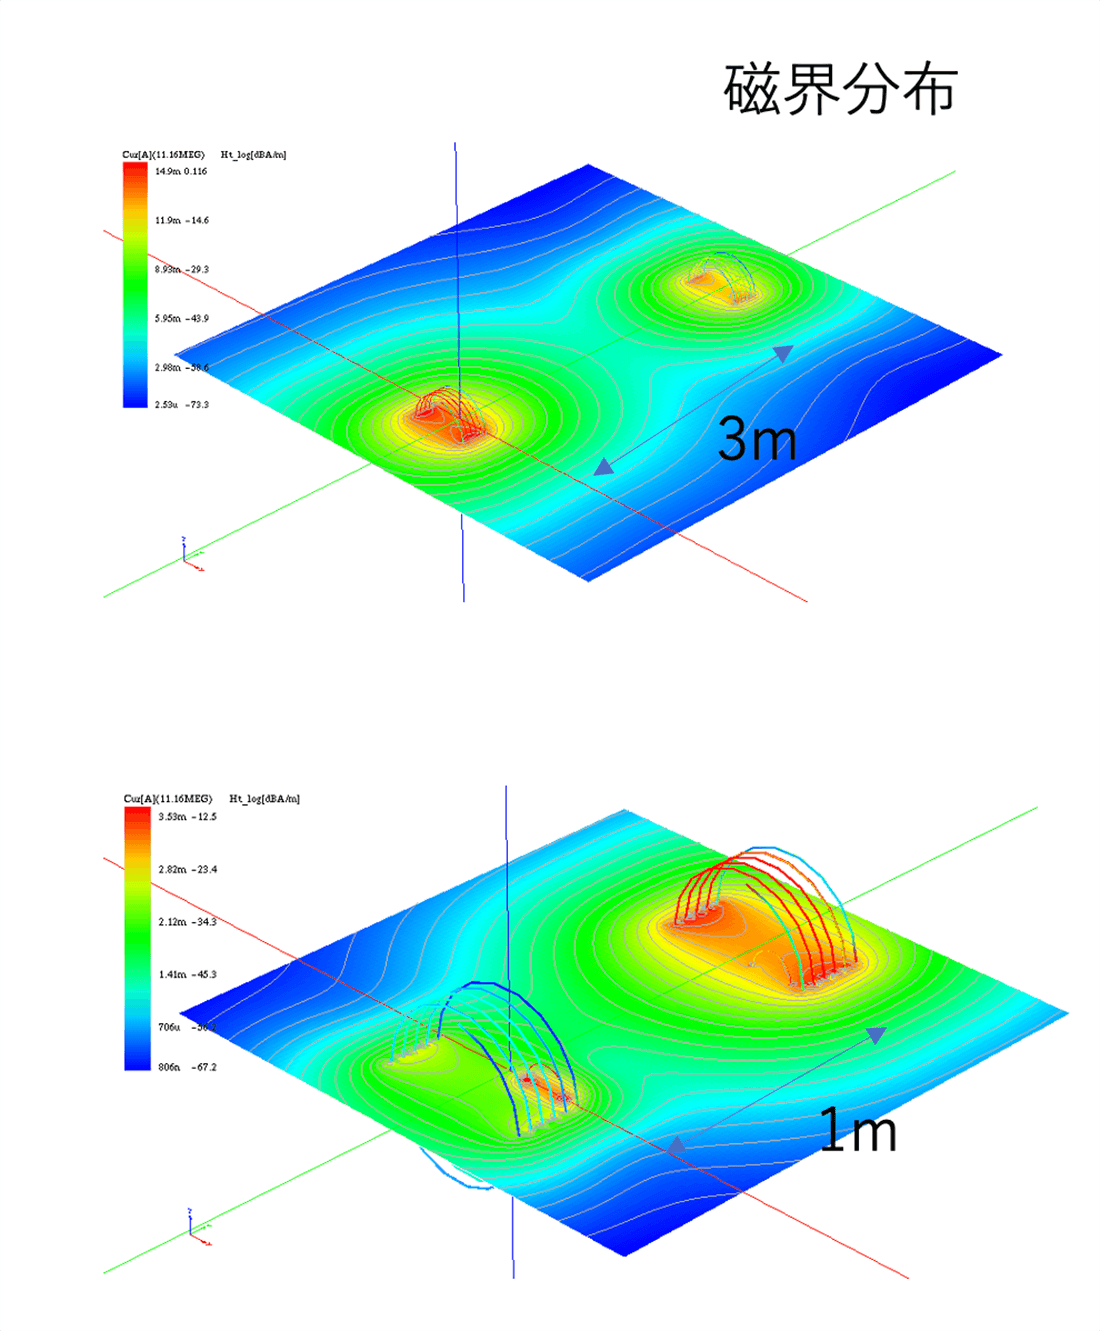 離れた位置における磁界共鳴方式電力伝送の解析例